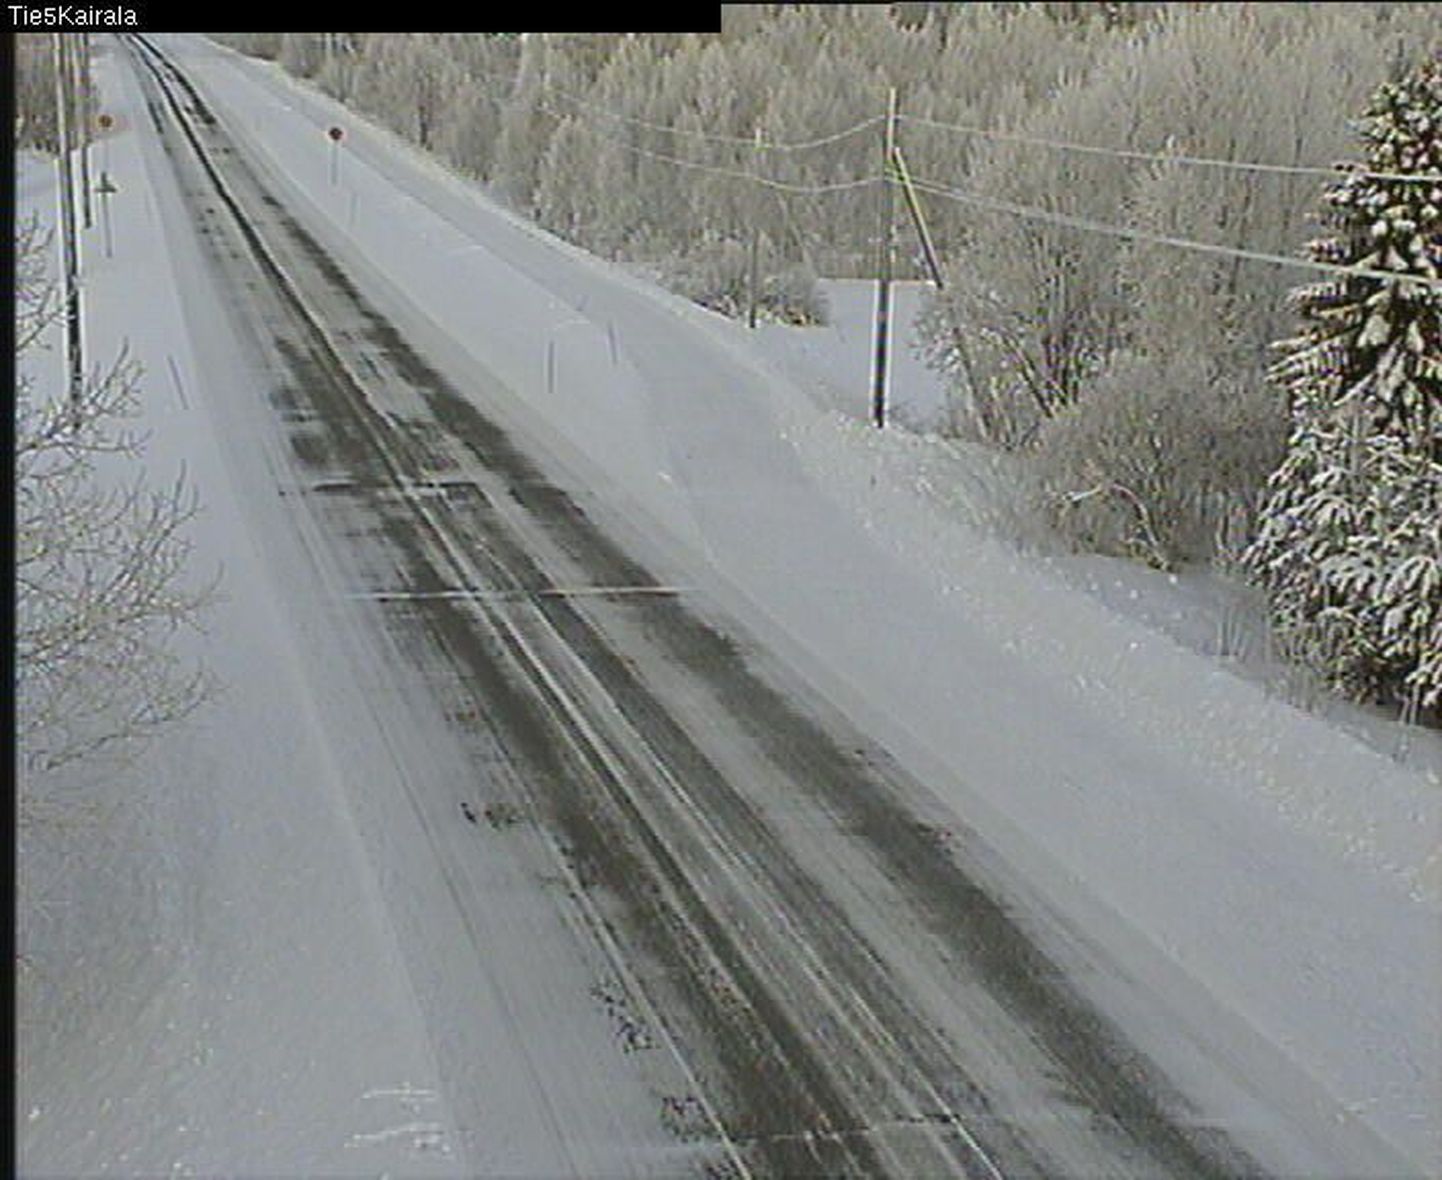 Soome maanteeameti valvekaamerast saadud pildil on Kairalast Sodankylässe viiv maantee, kus kell 11.24 oli õhutemperatuur -30 kraadi.